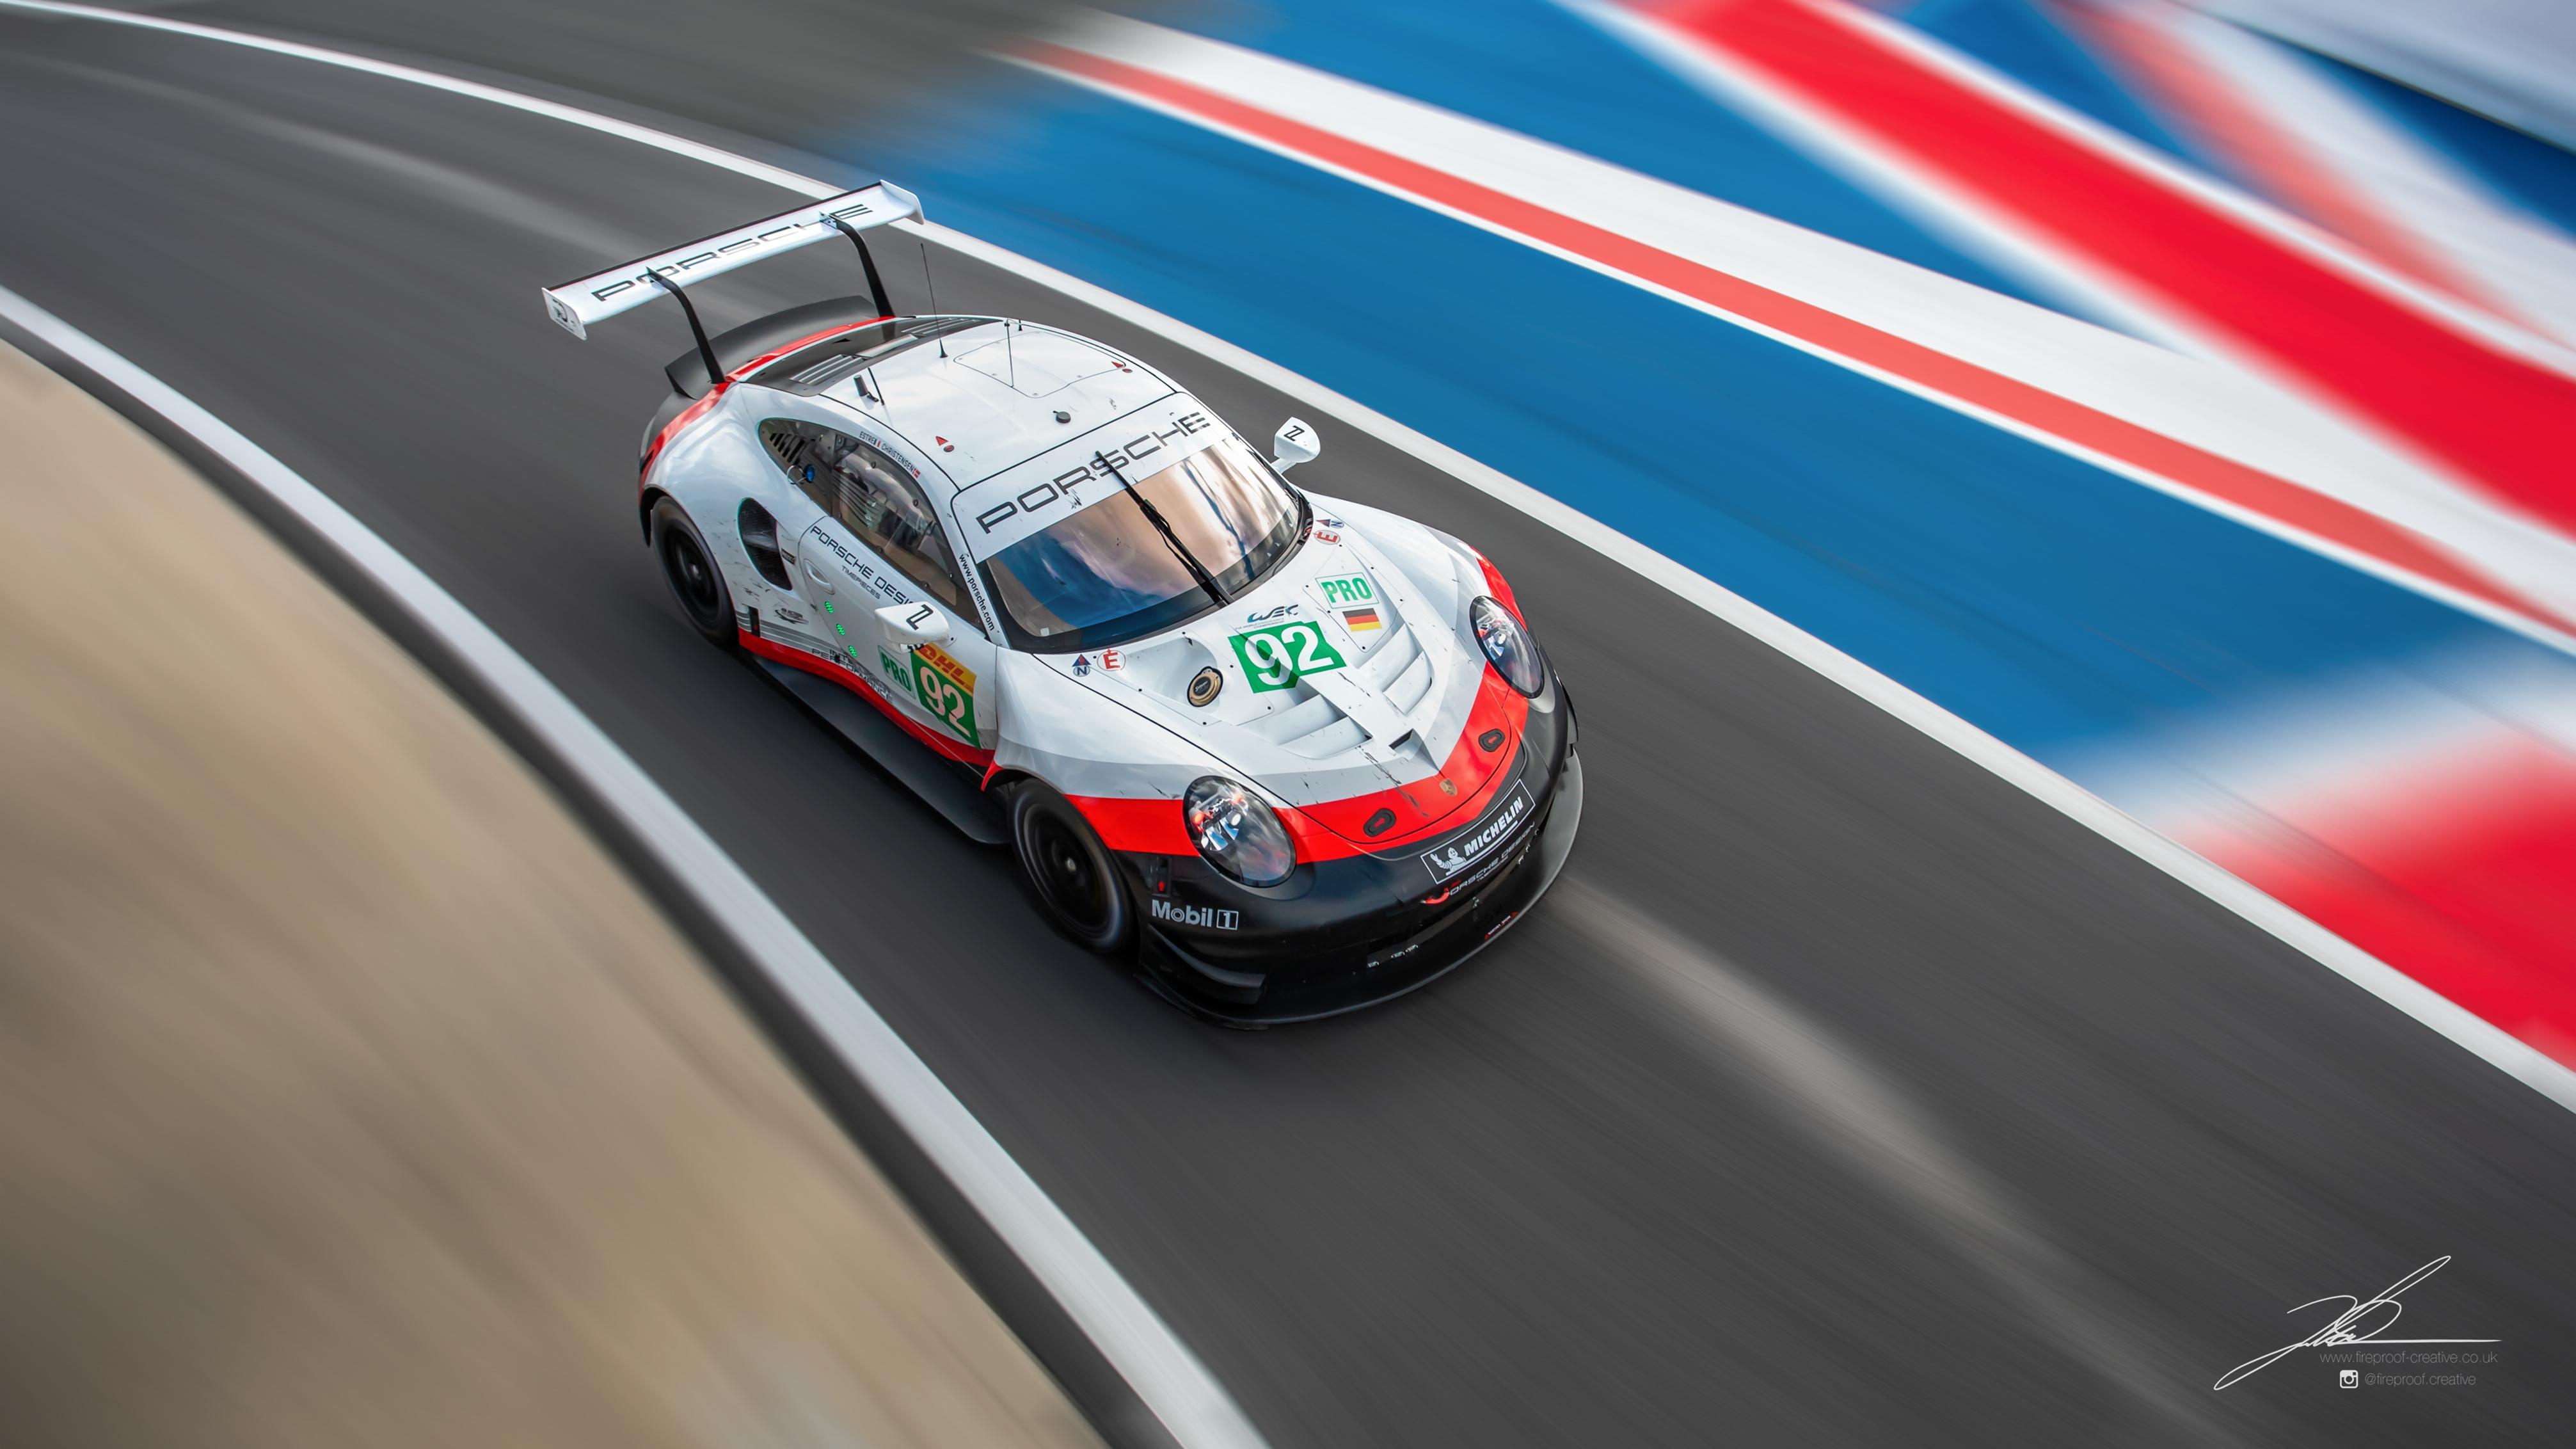 Oc 4k Wallpaper Porsche Gt Team Rsr Michael